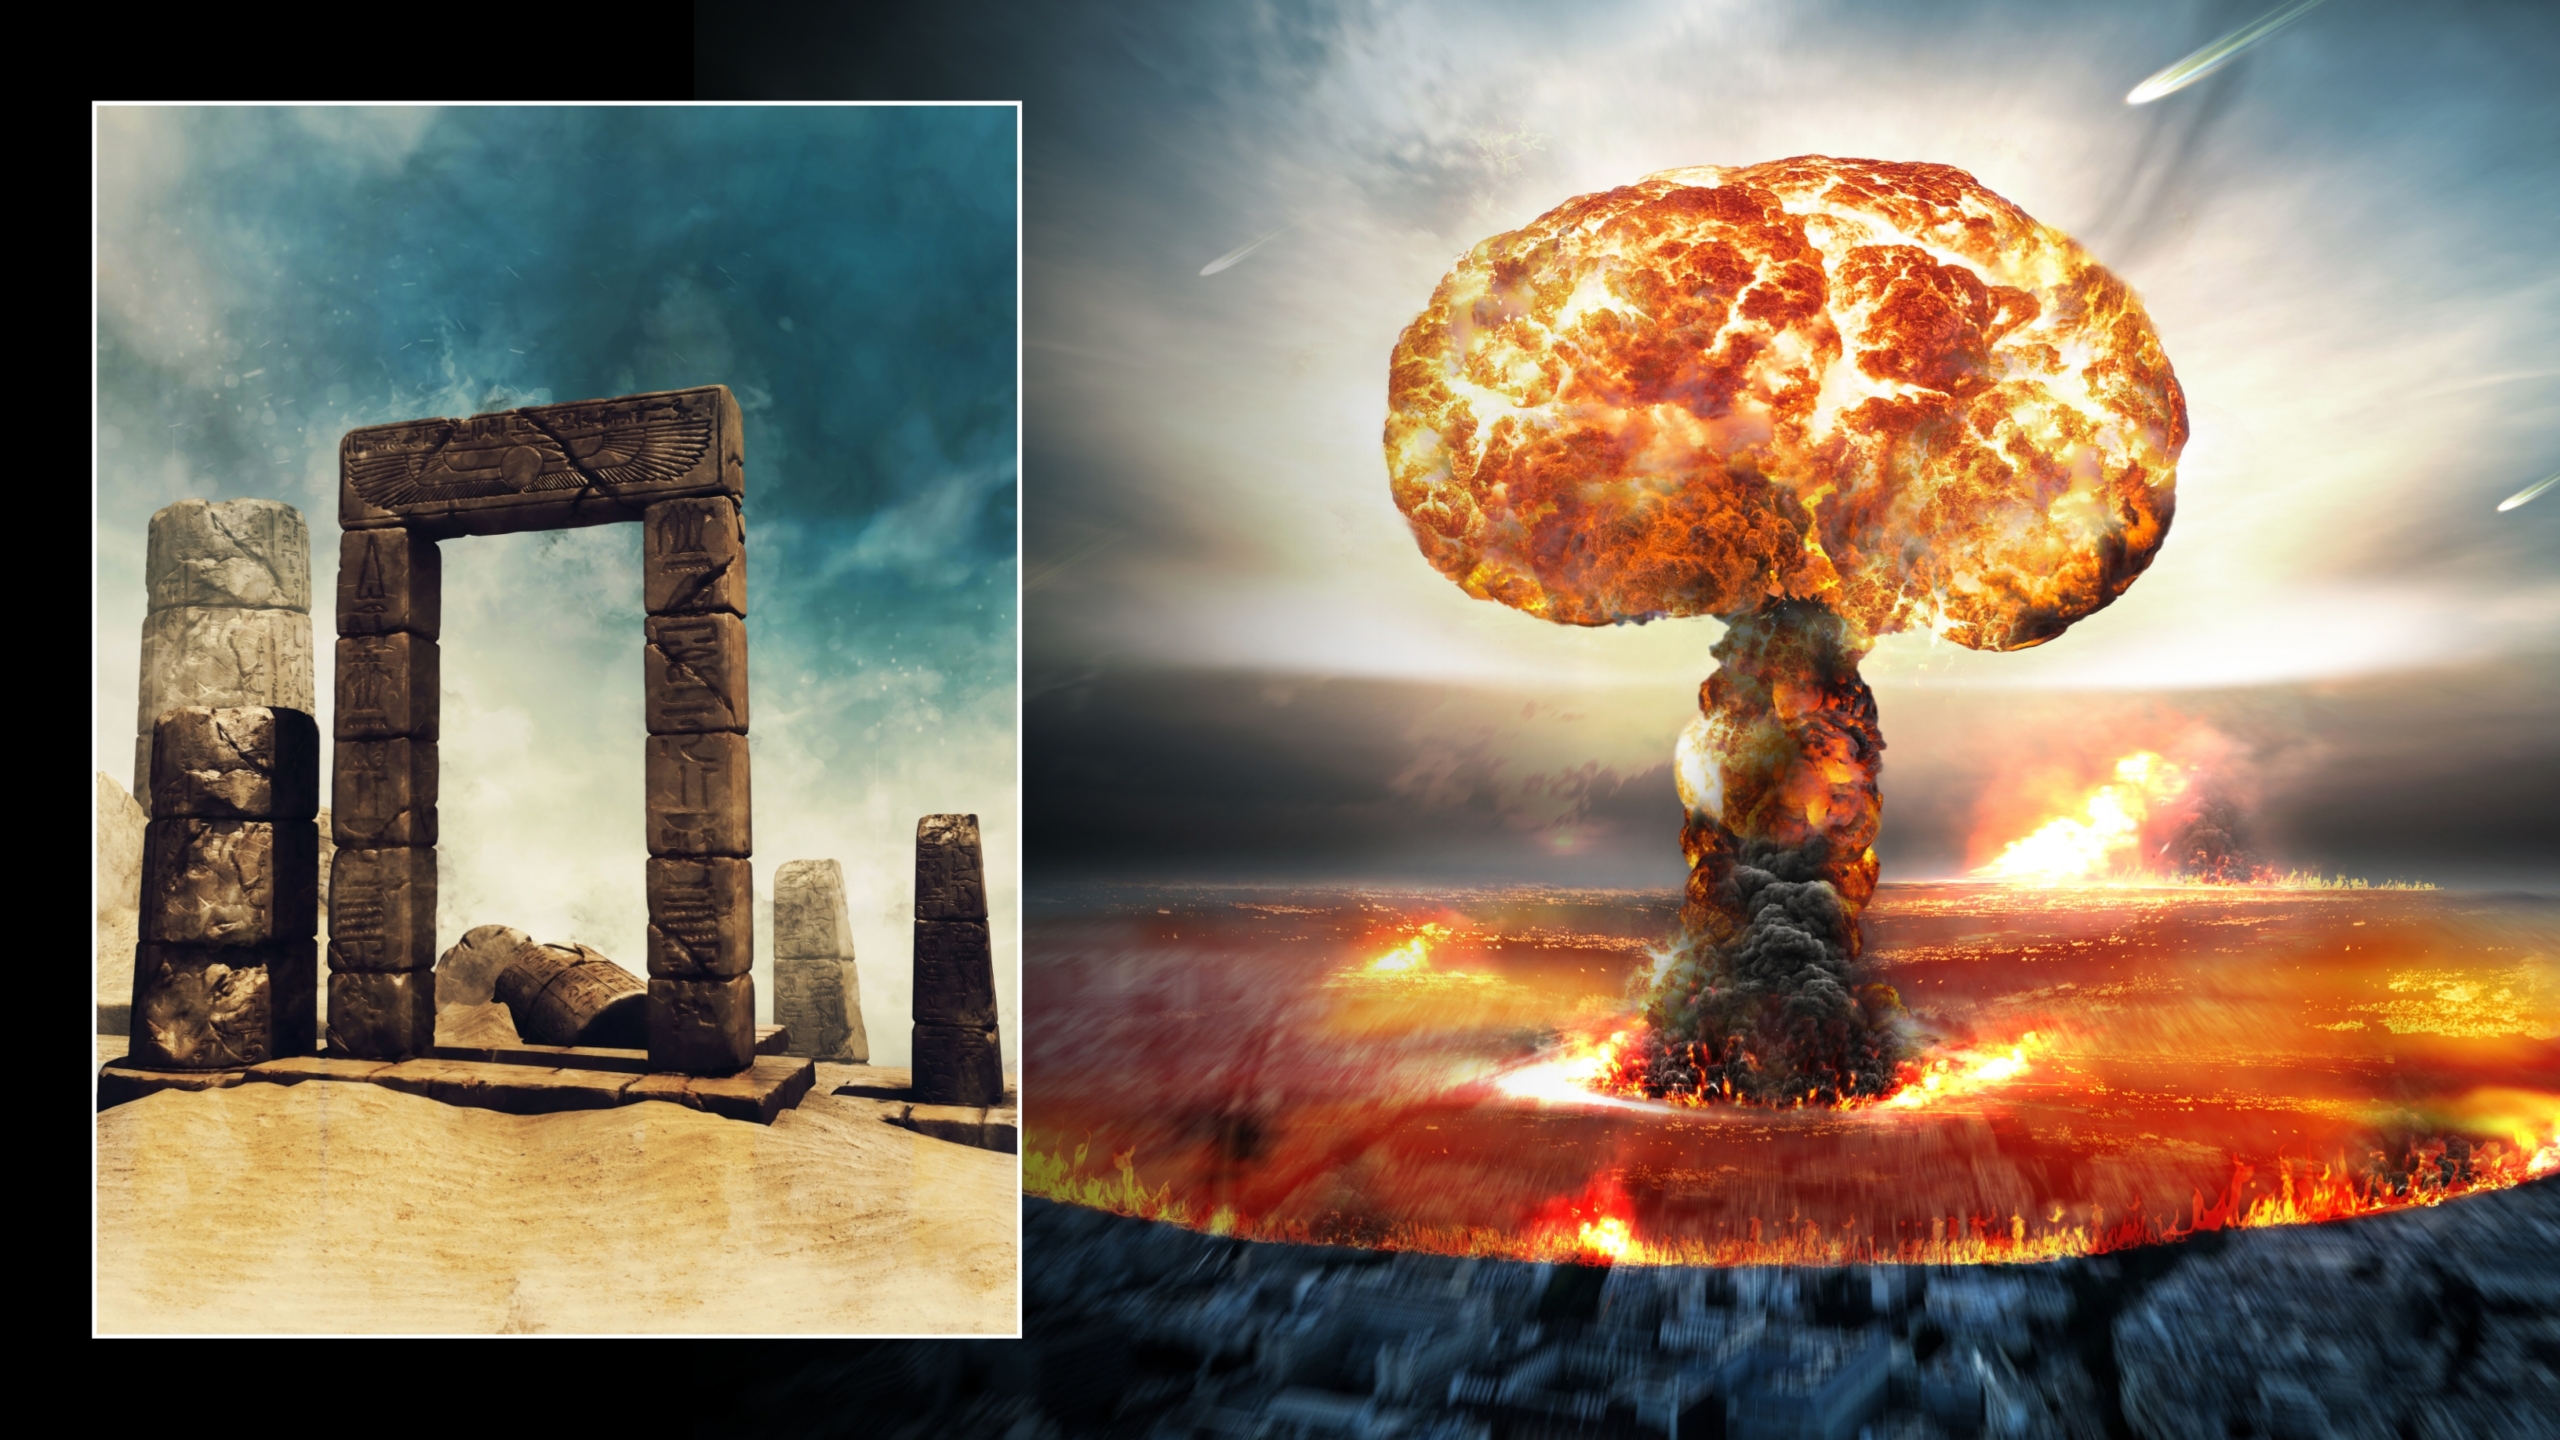 Ilustrace atomového výbuchu a starodávné ruiny v poušti. © Kredity obrázku: Obsidianfantacy & Razvan lonut Dragomirescu | Licencováno od DreamsTime.com (Fotografie pro redakční/komerční použití)